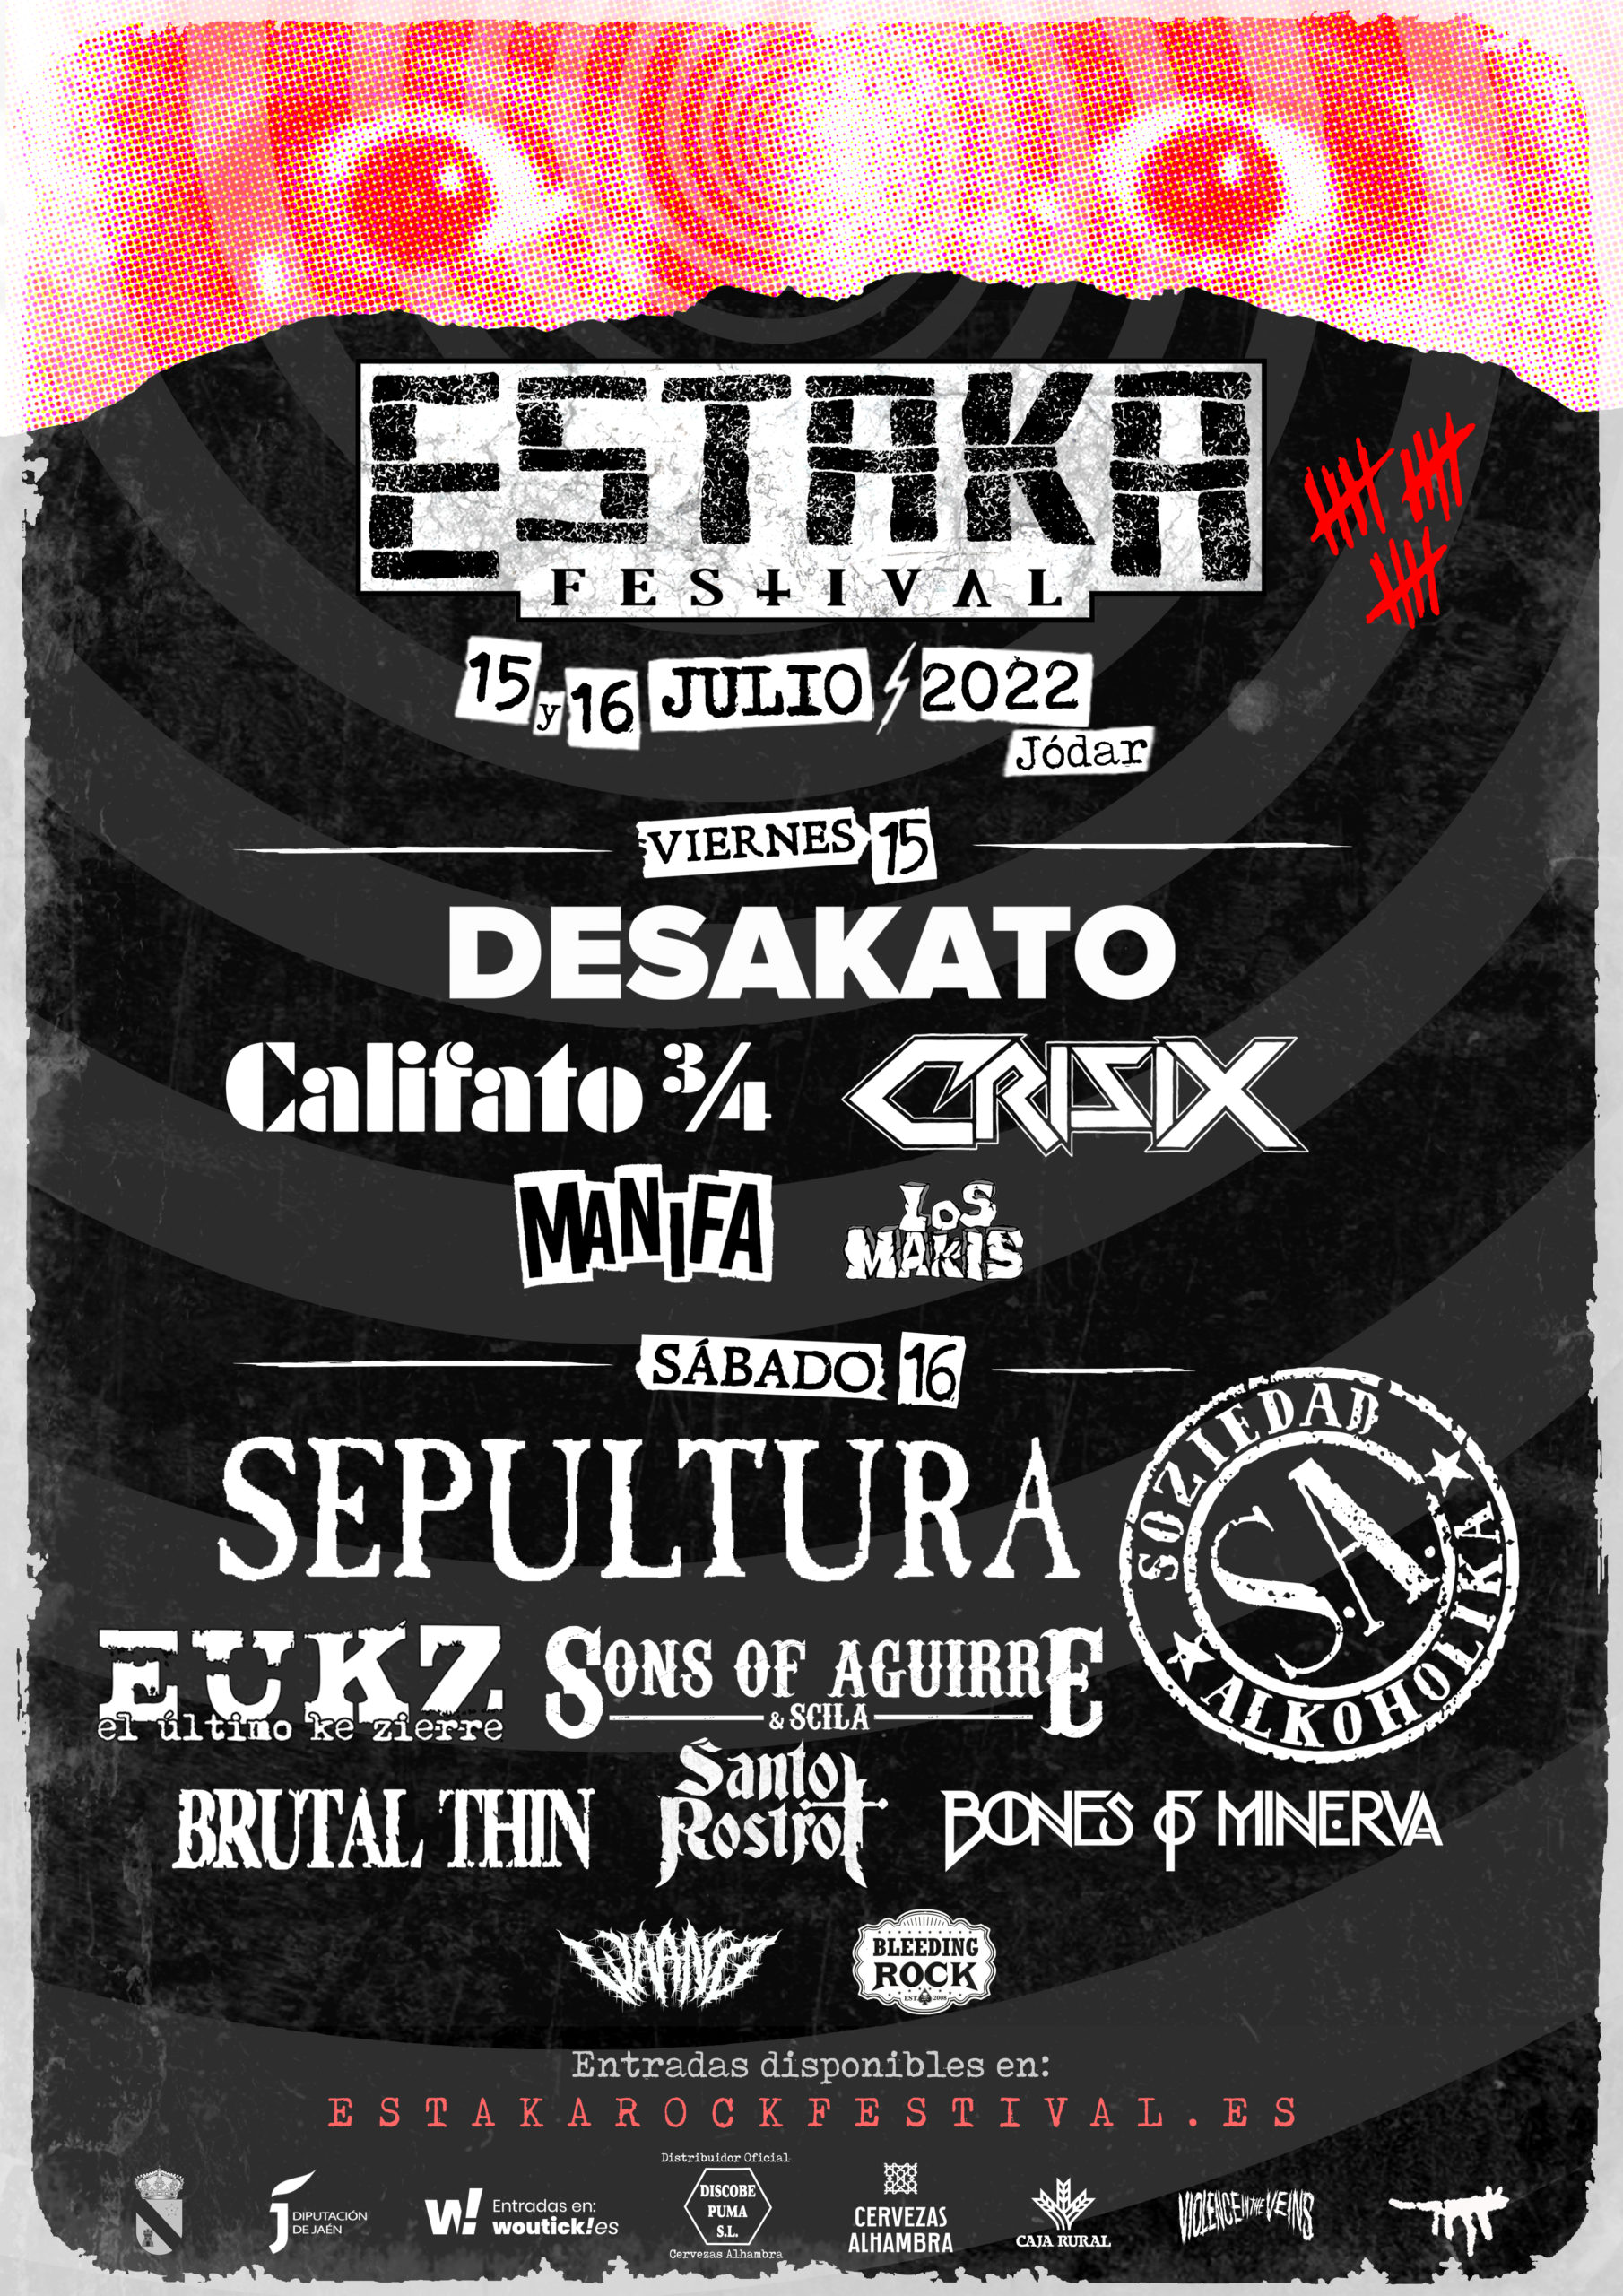 Estaka Festival 2022 (XV ANIVERSARIO) anuncia el cartel por días